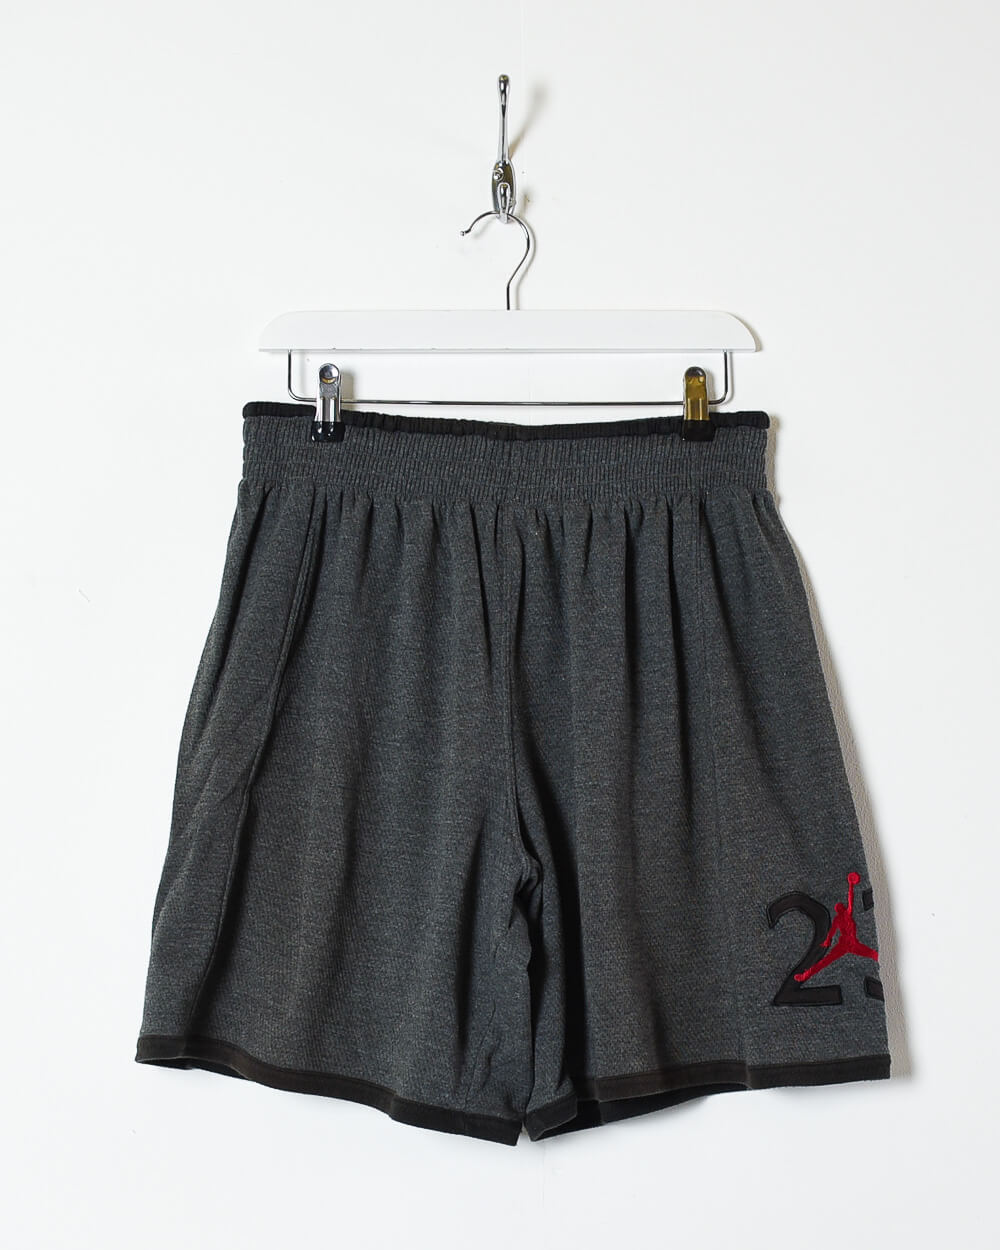 Grey Nike Jordan 23 Shorts - Large